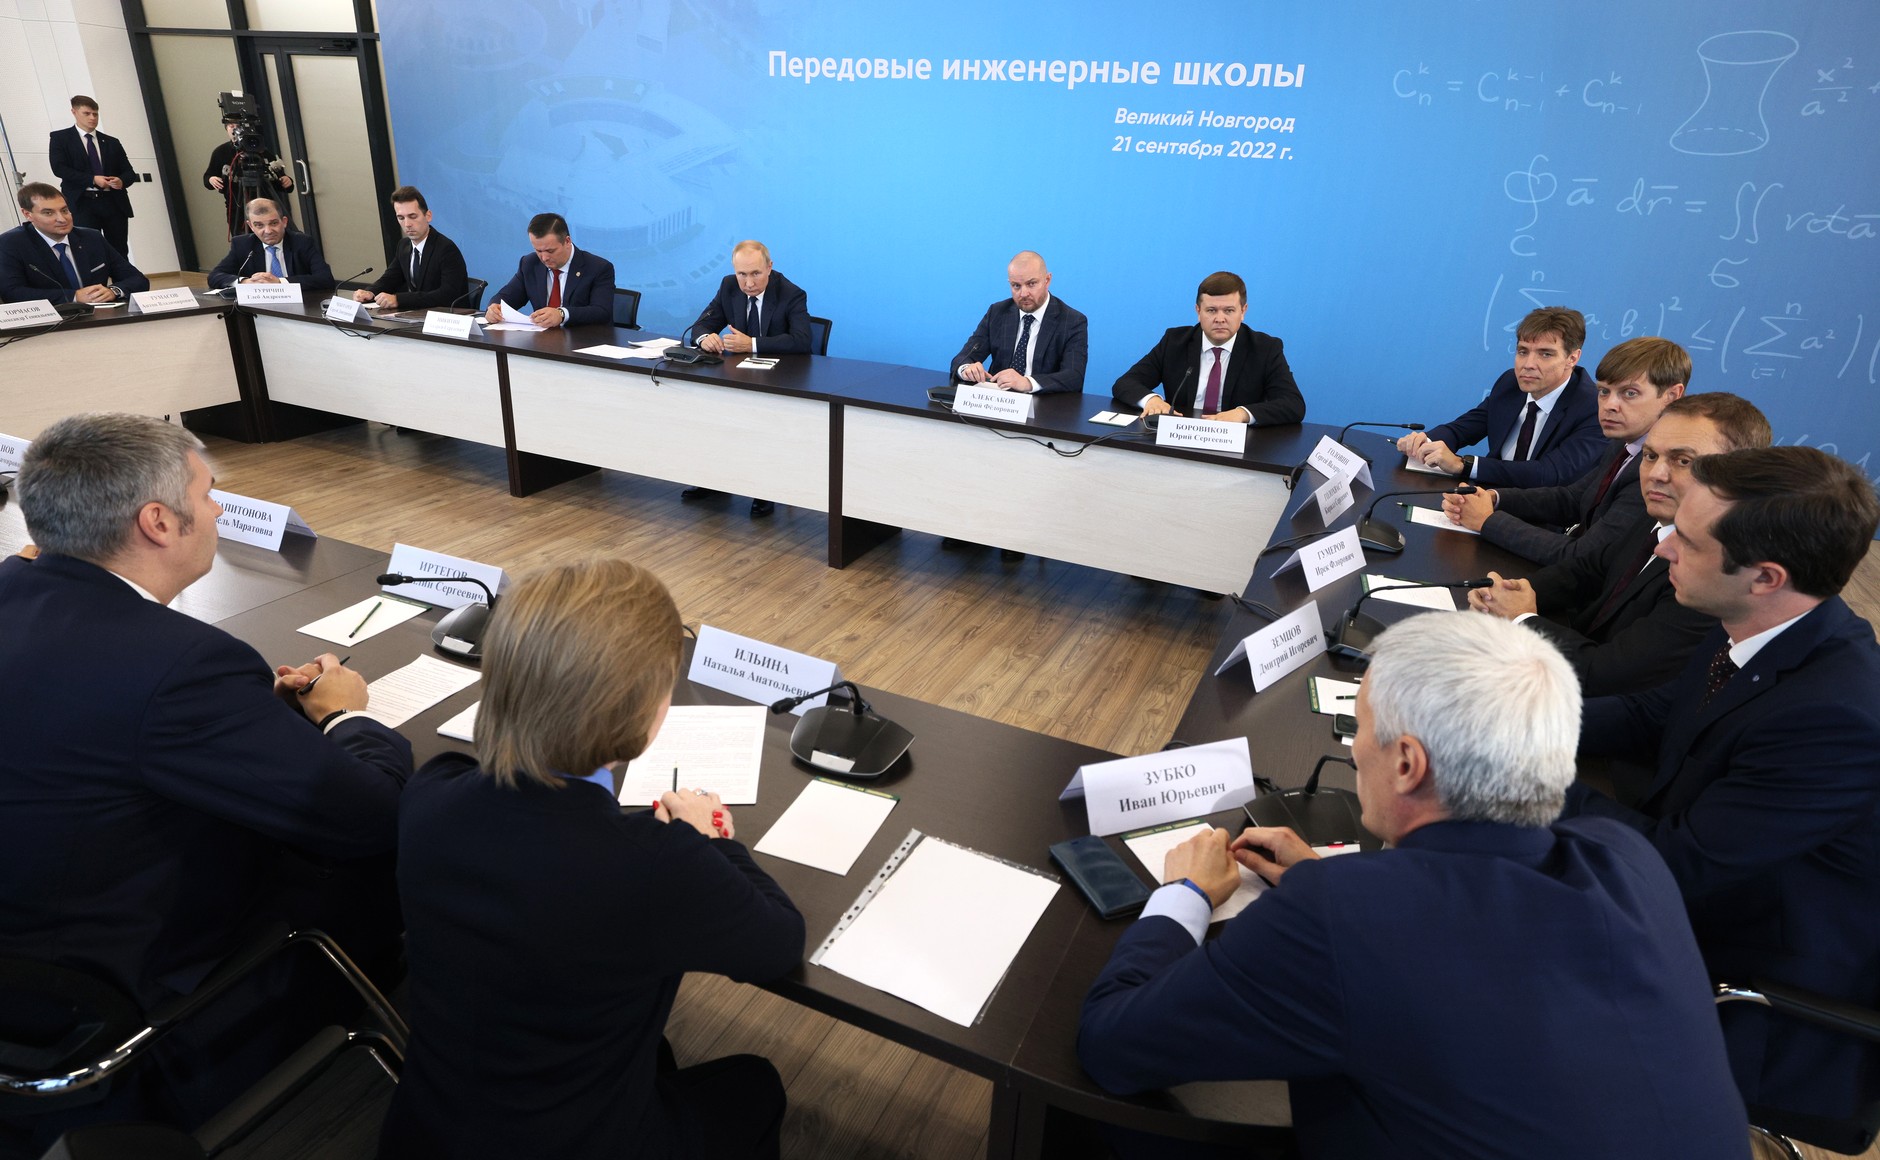 Владимир Путин поддержал запуск молодежных конструкторских бюро в вузах